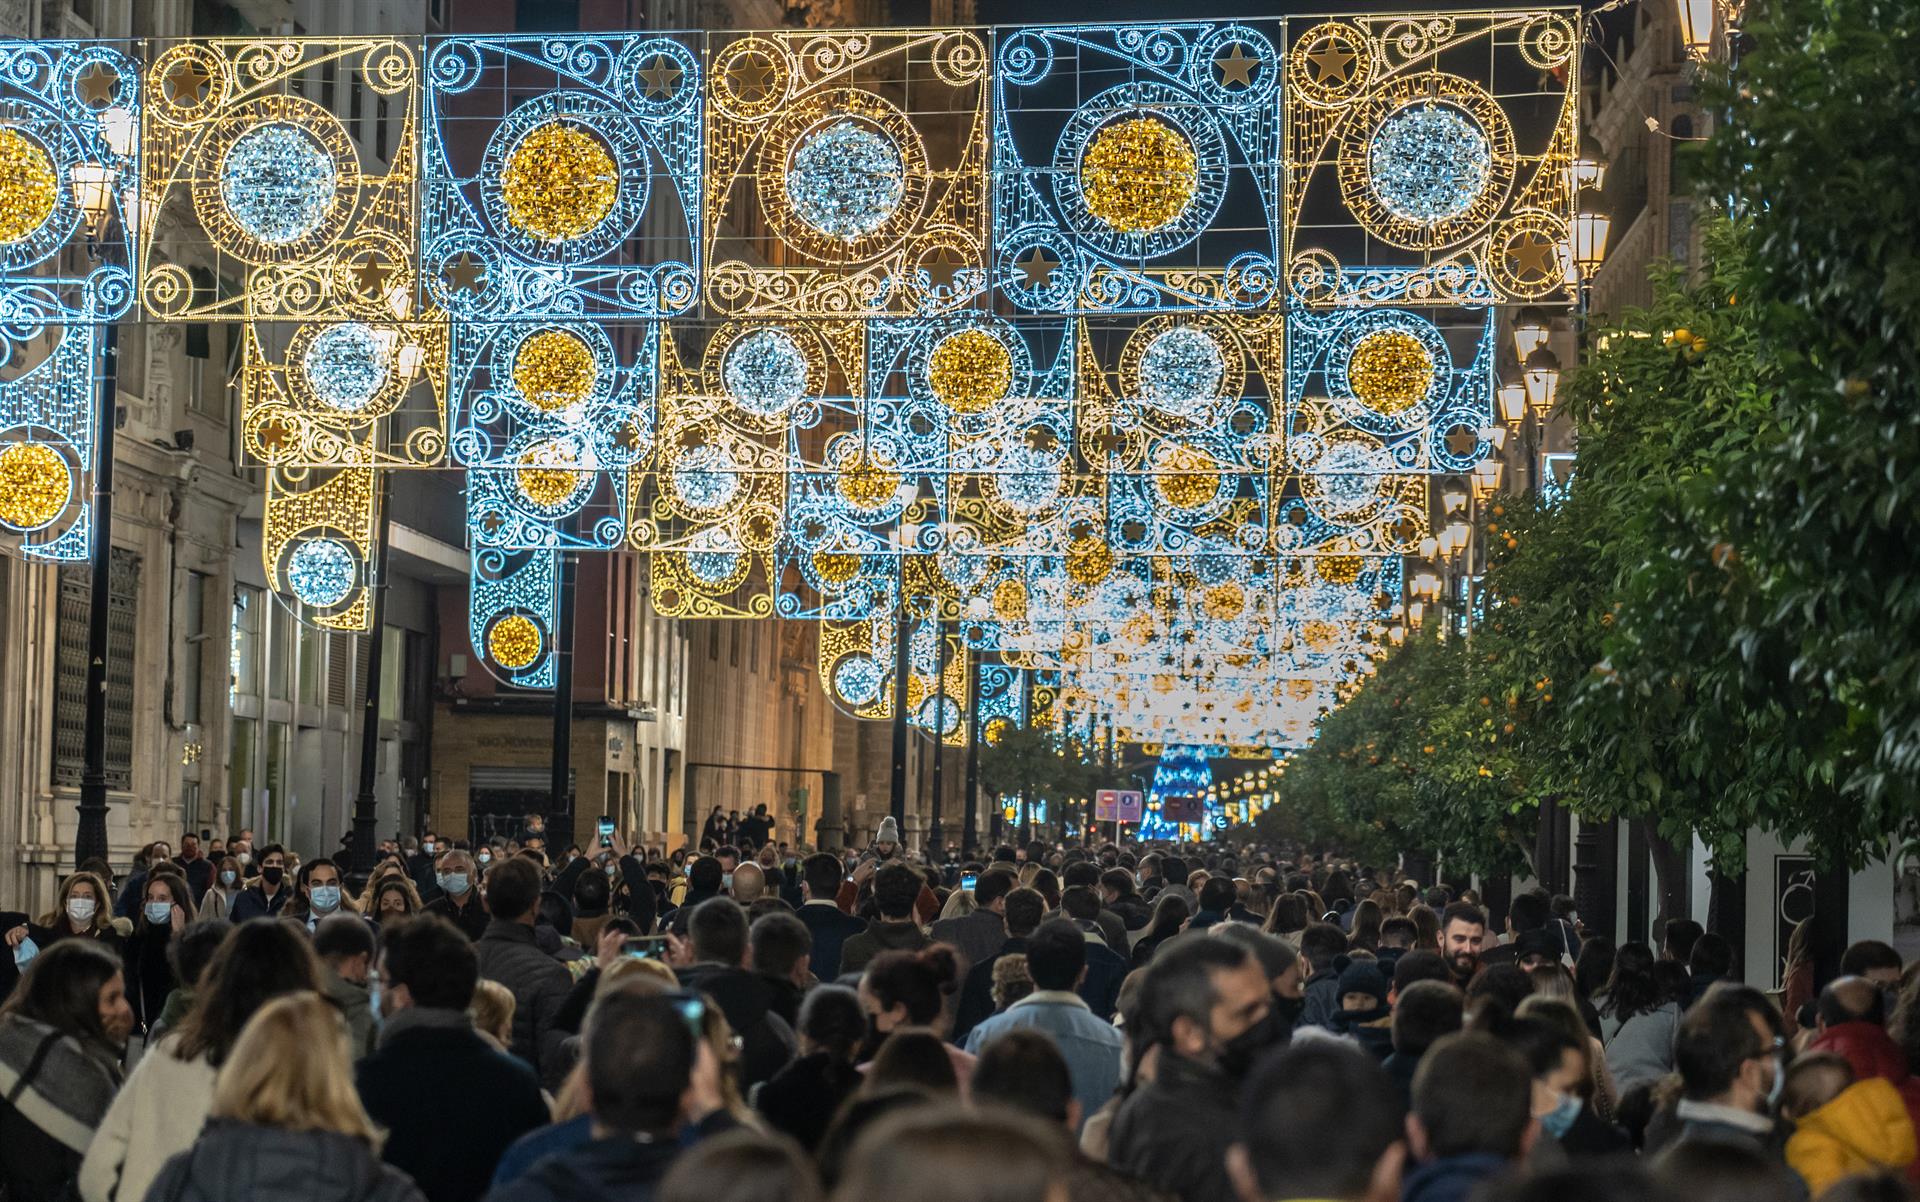 Muchos sevillanos han acudido a la Avenida de la Constitución para ver el encendido de las luces de navidad. / Foto: Eduardo Briones. / Europa Press.